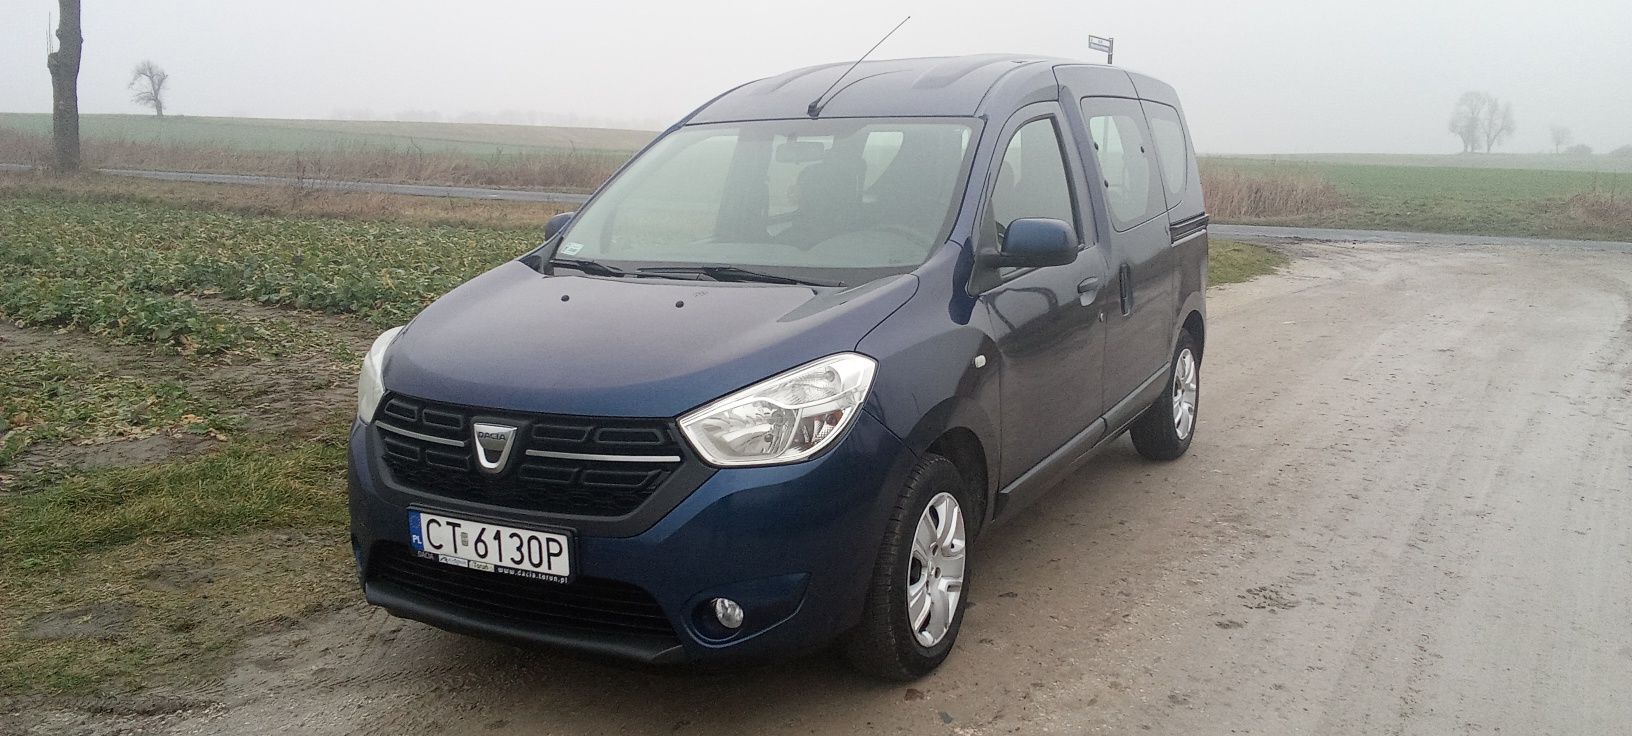 Dacia Dokker 1.6, 2017 r., faktura VAT brutto